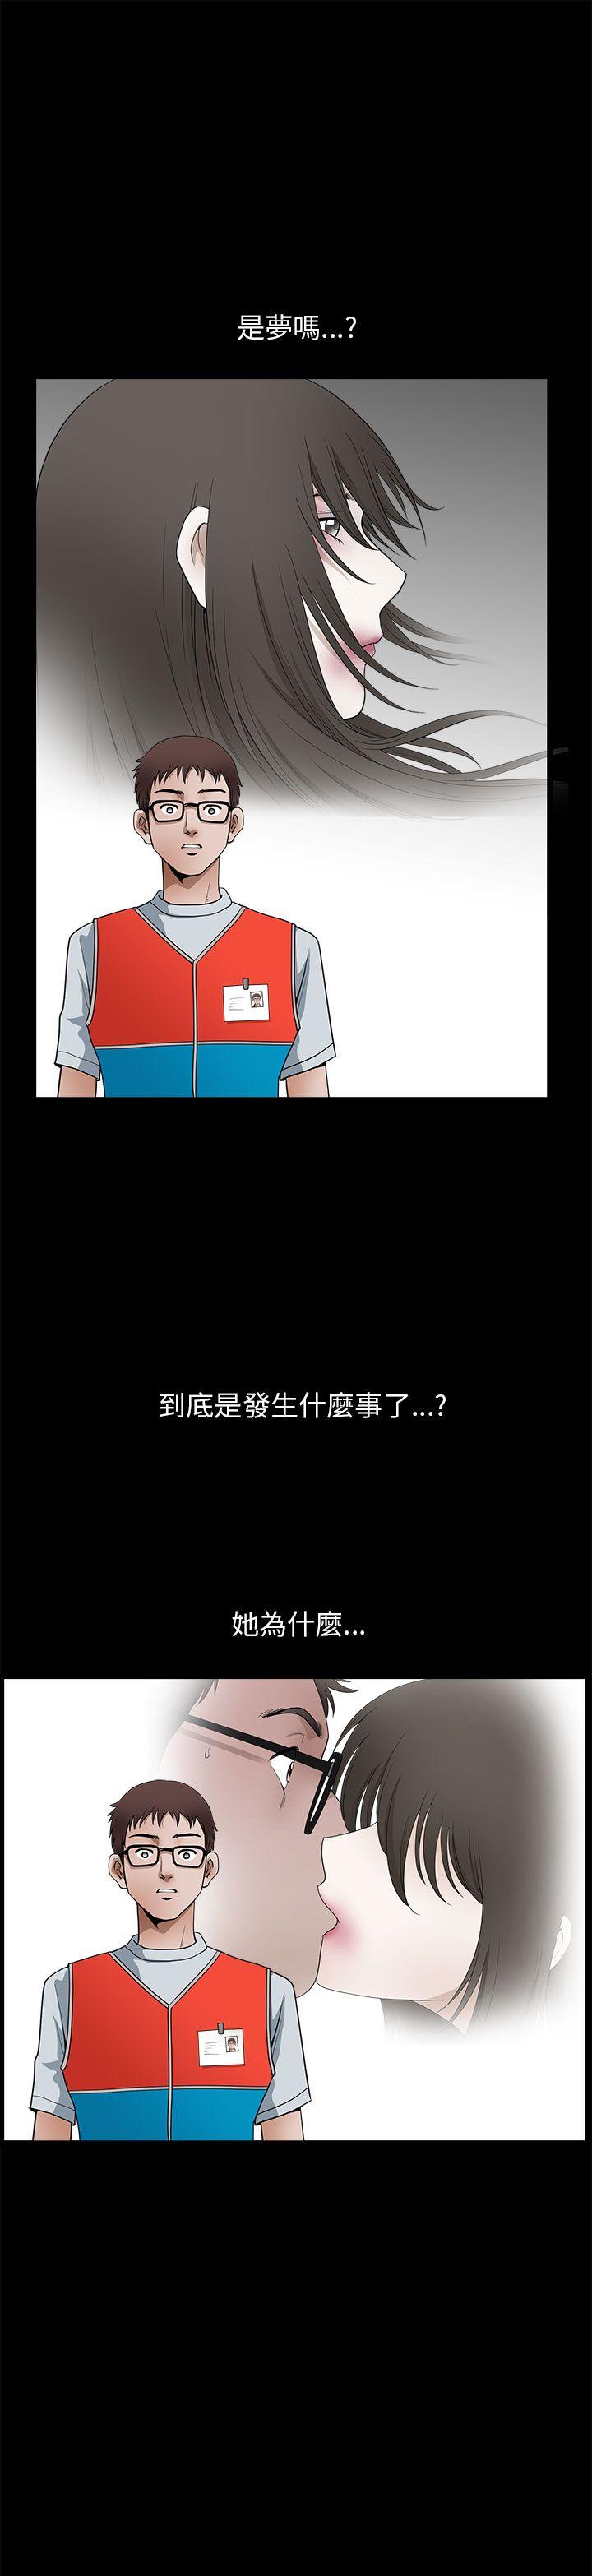 韩国污漫画 煦娜 第11话 13